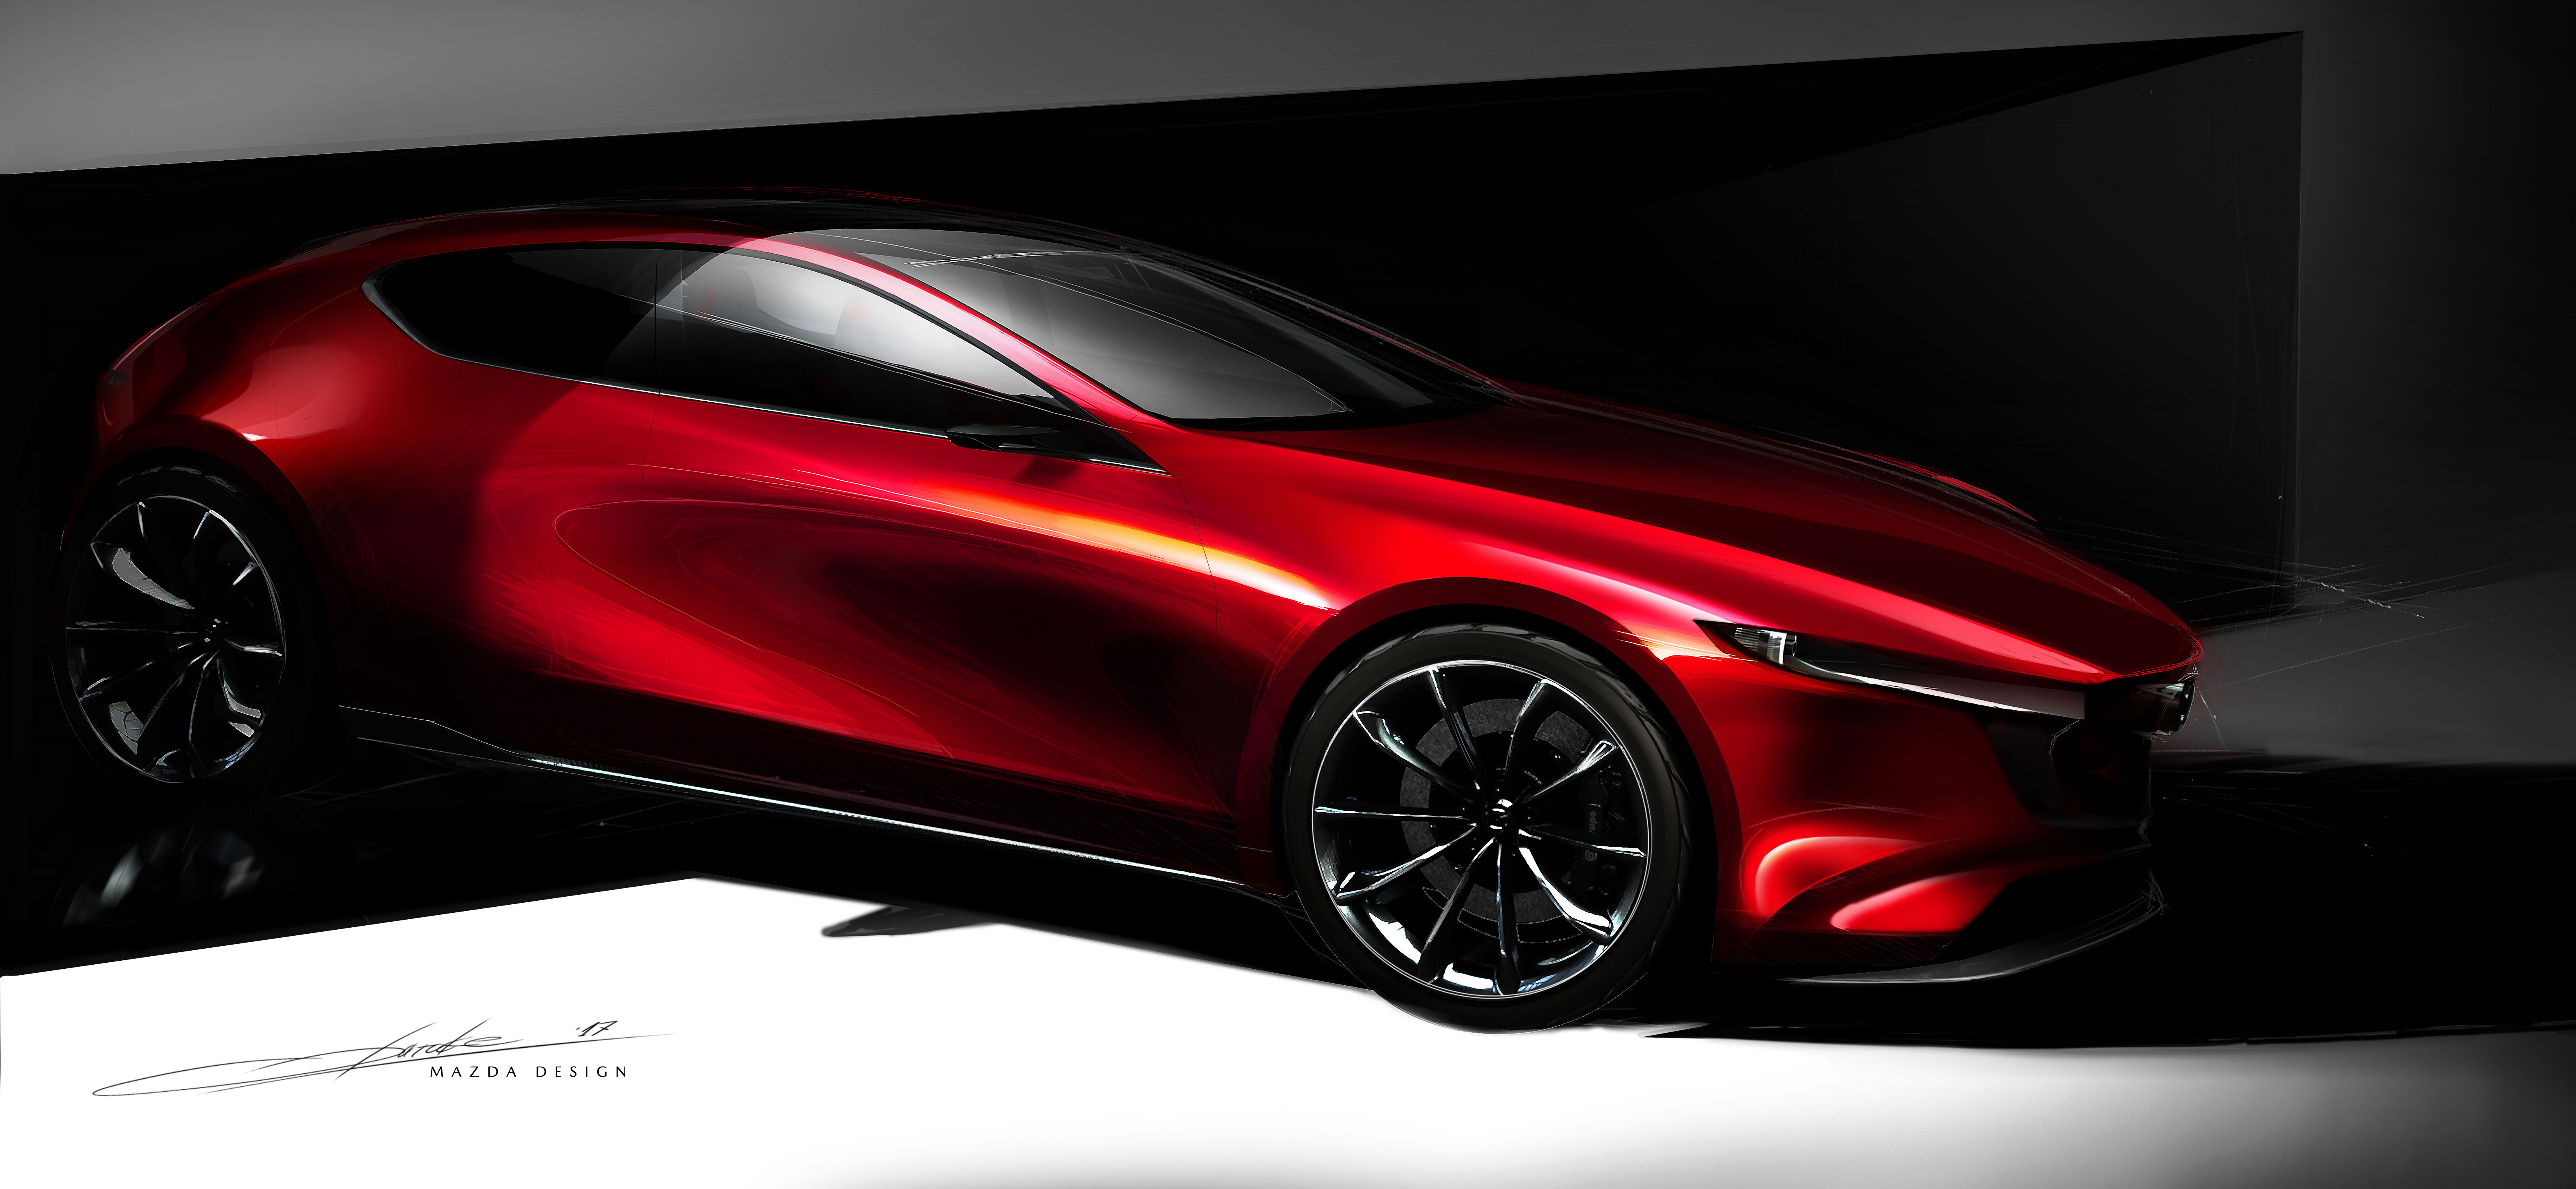 Mazda KAI Concept design.